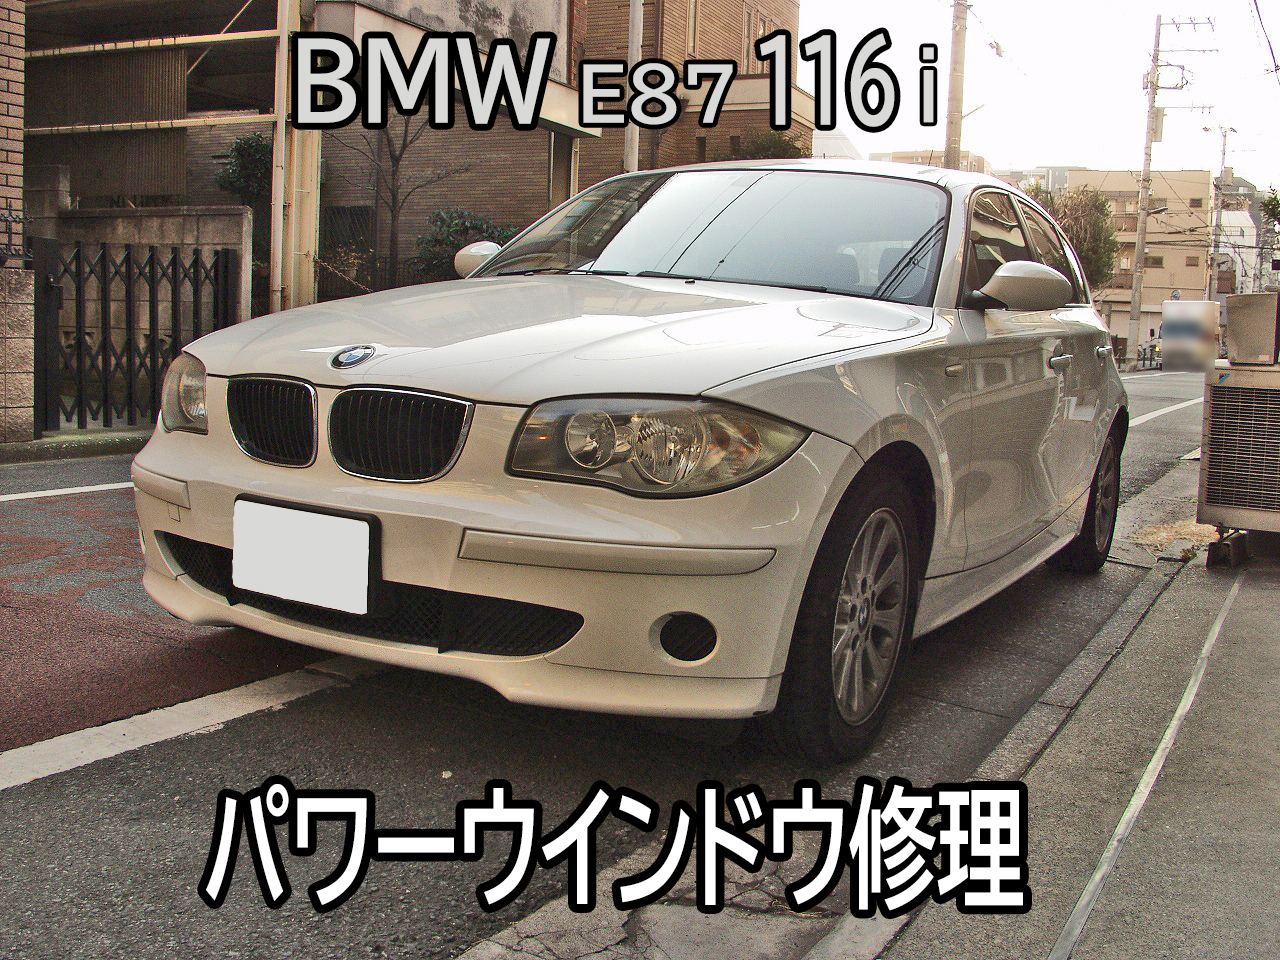 BMW E87 116iのパワーウインドウ修理のご依頼をいただきました。